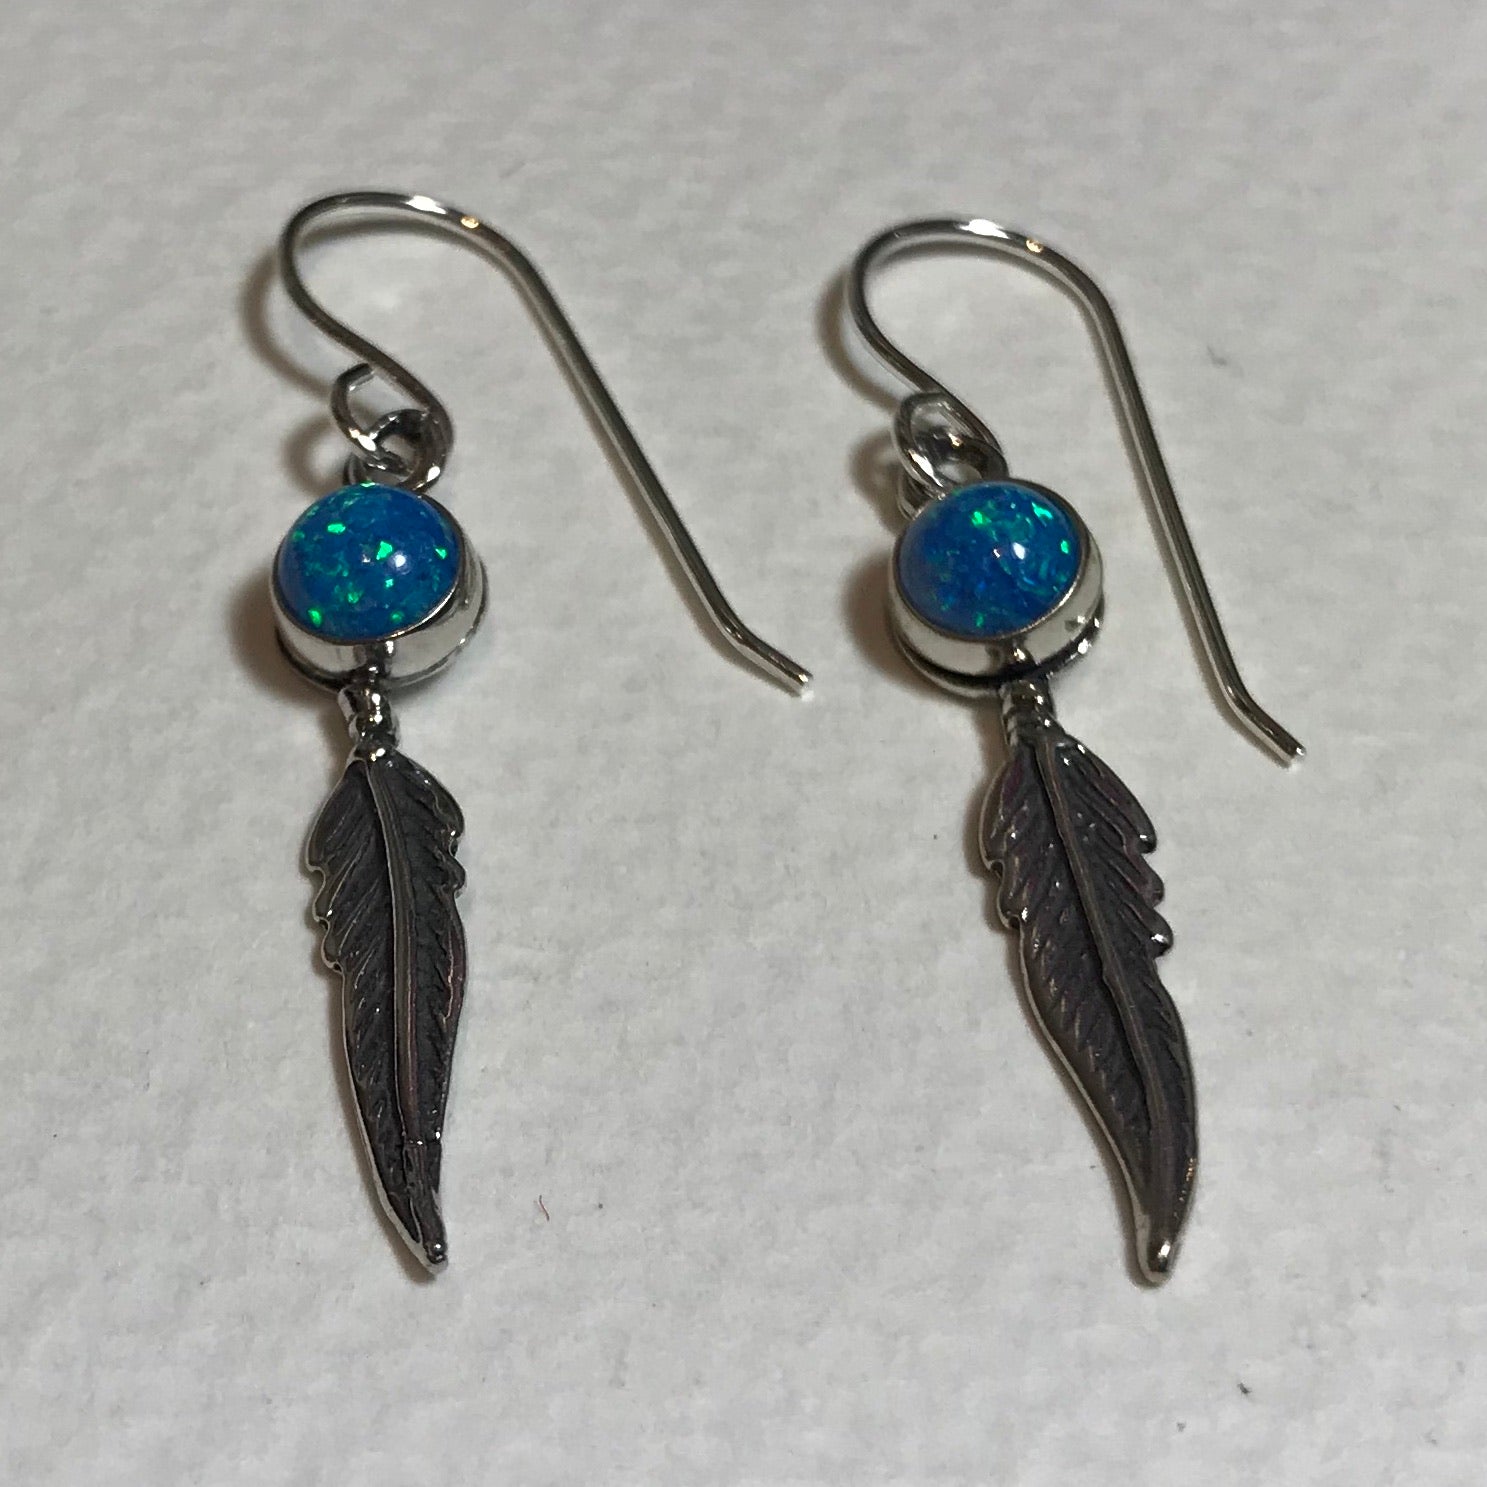 Opal Feather Earrings - The Nancy Smillie Shop - Art, Jewellery & Designer Gifts Glasgow